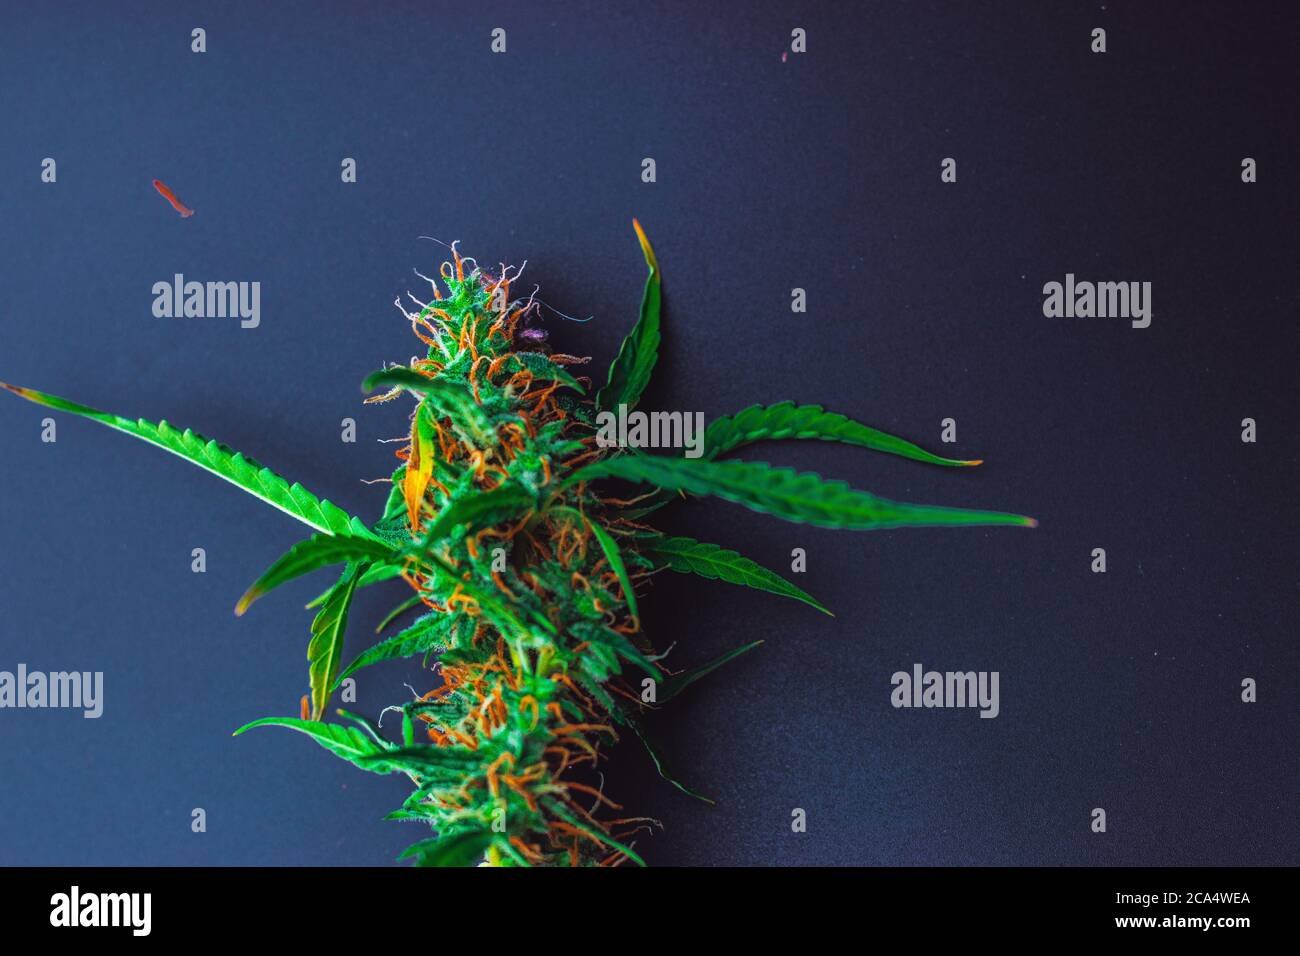 Plante colorée de cannabis de marijuana sur fond noir avec espace de copie Banque D'Images